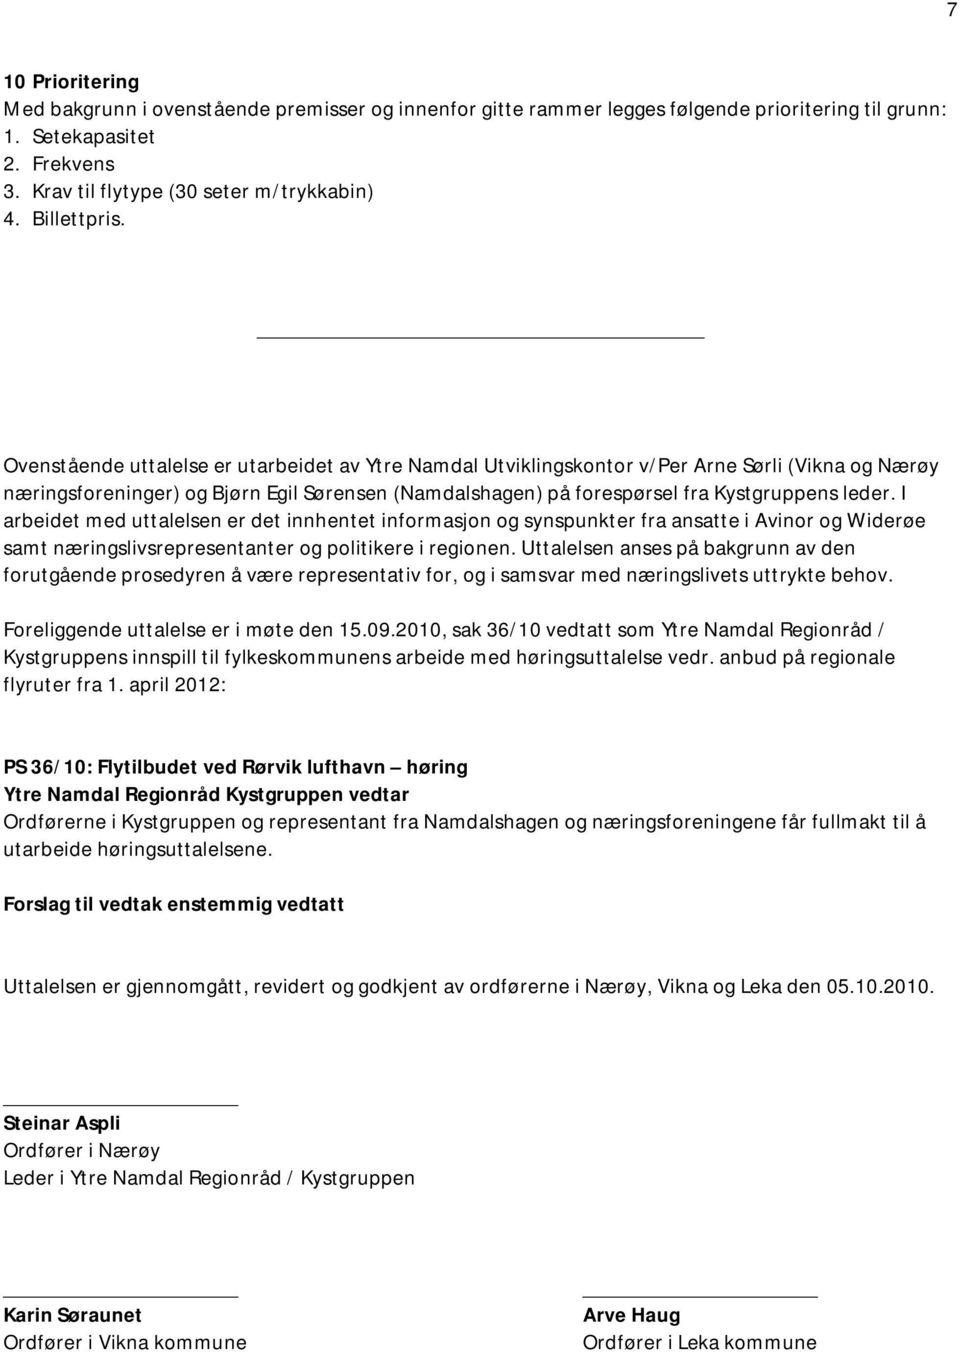 Ovenstående uttalelse er utarbeidet av Ytre Namdal Utviklingskontor v/per Arne Sørli (Vikna og Nærøy næringsforeninger) og Bjørn Egil Sørensen (Namdalshagen) på forespørsel fra Kystgruppens leder.